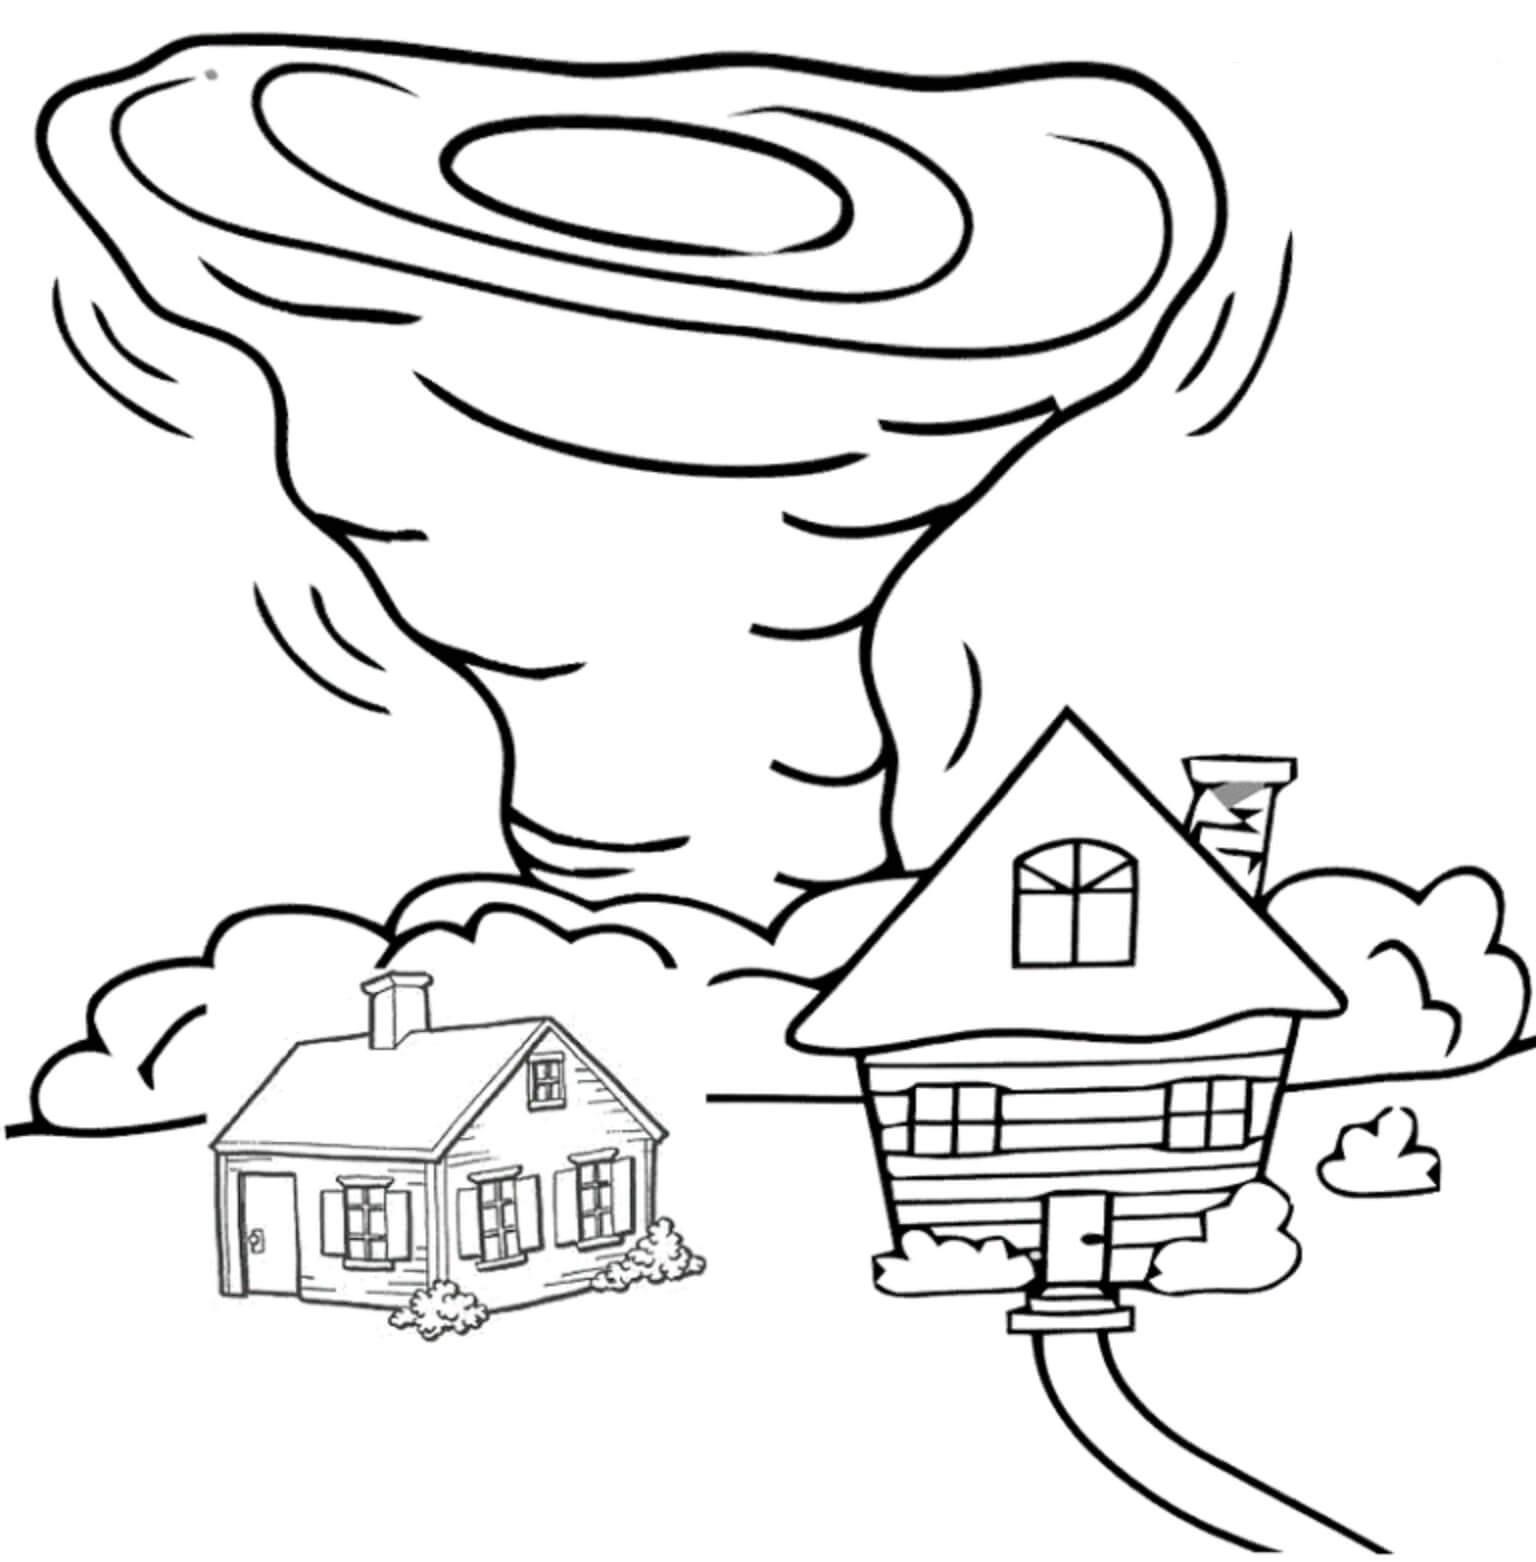 Tornado met twee huizen